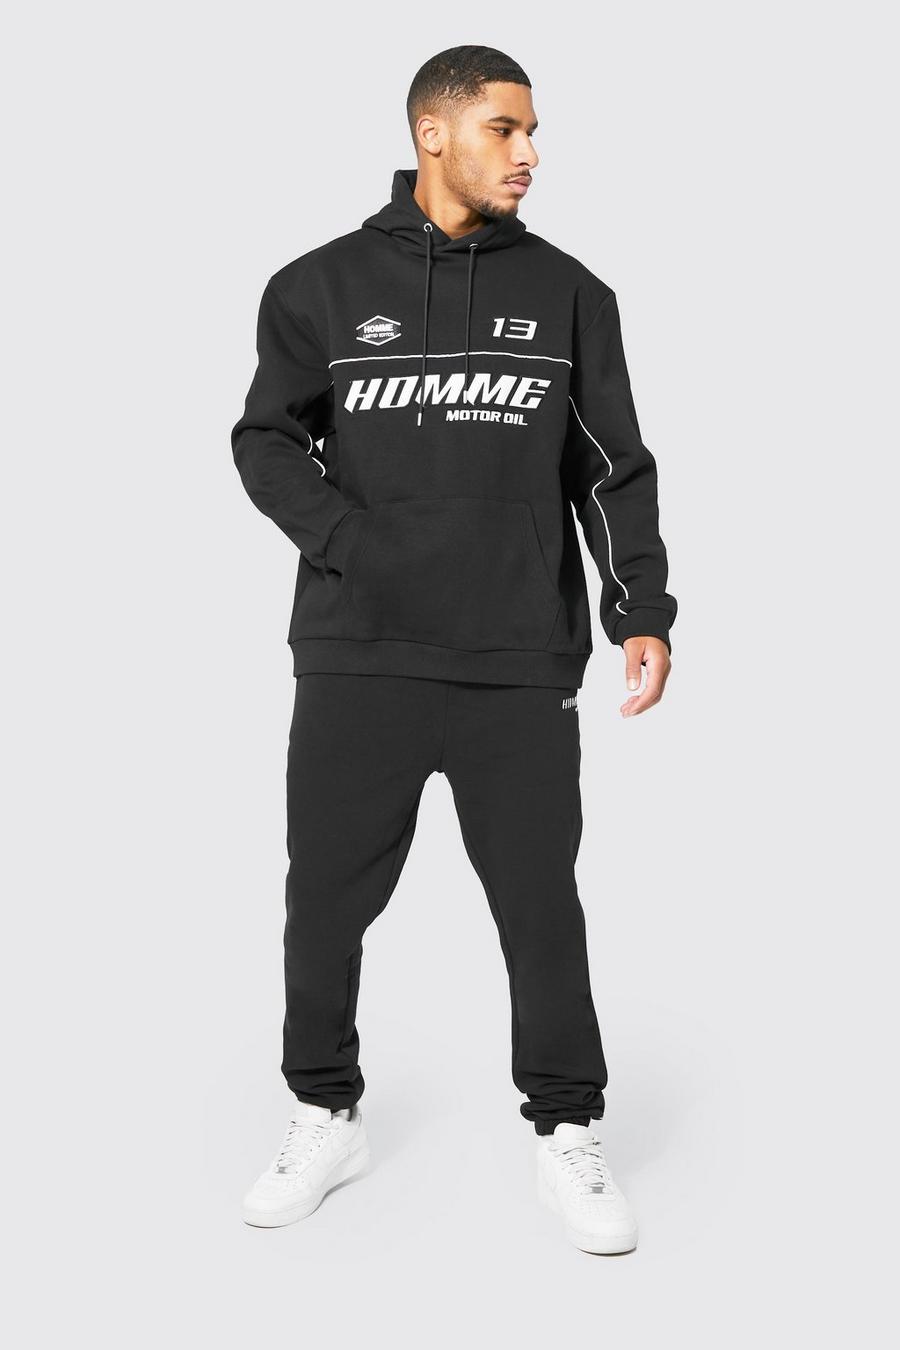 שחור nero חליפת טרנינג אוברסייז עם אפליקציה בסגנון ספורט מוטורי, לגברים גבוהים